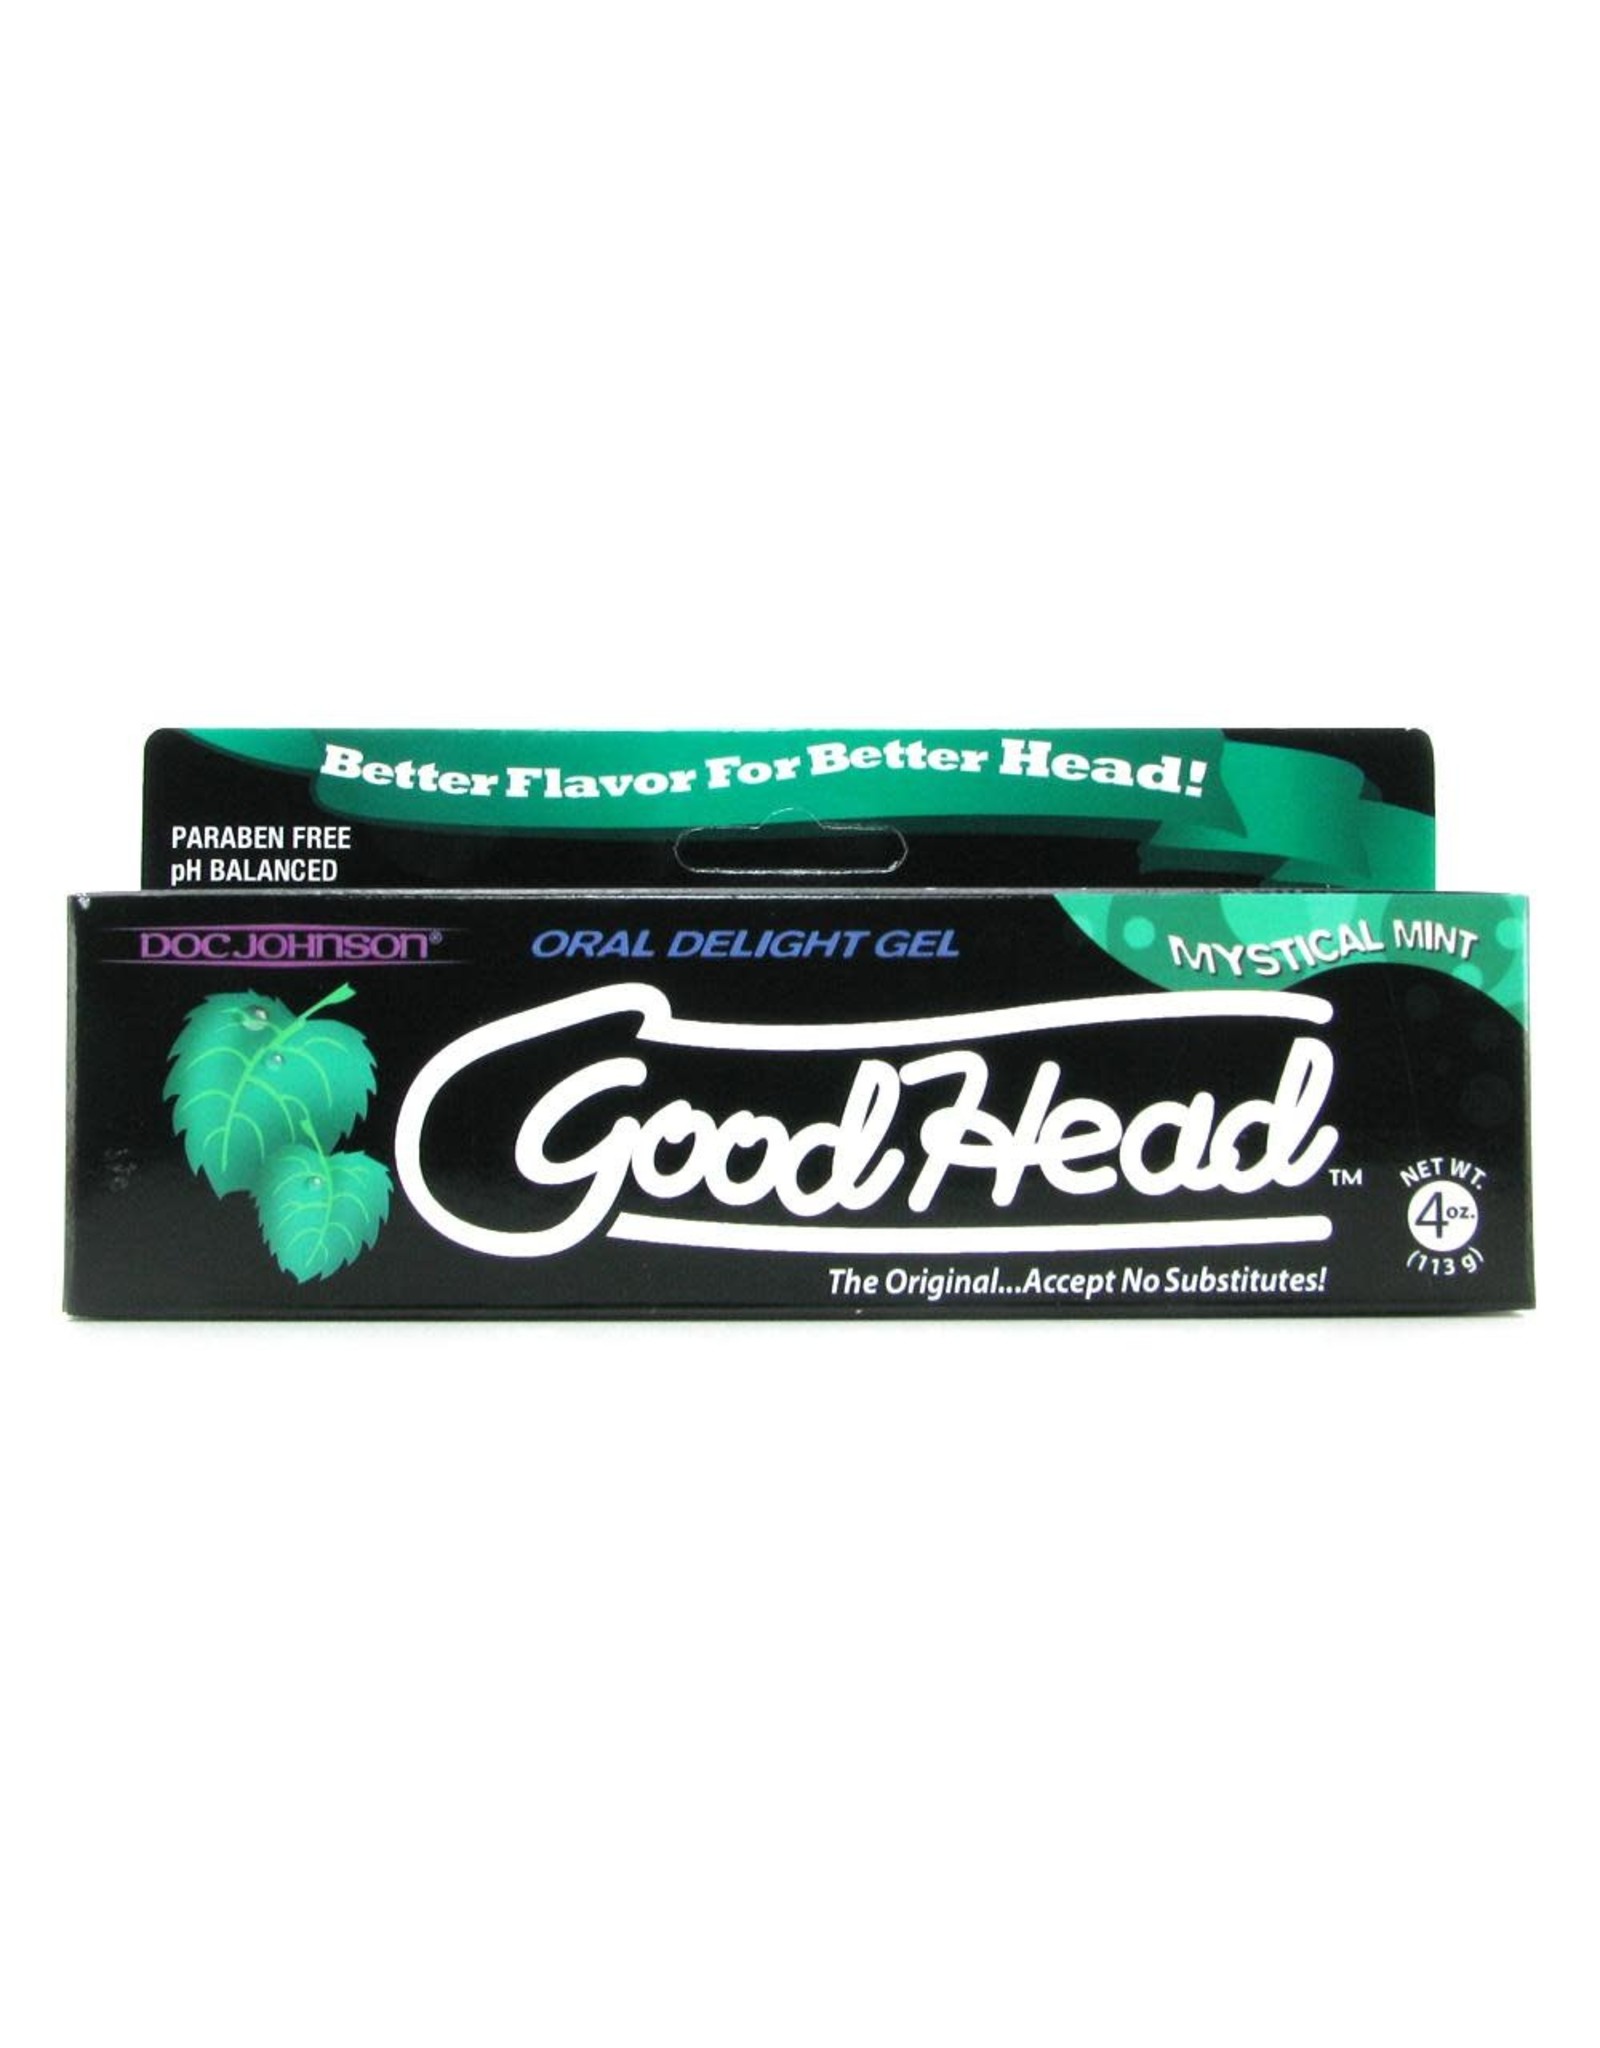 Doc Johnson GoodHead - Oral Delight Gel -Mystical Mint - 4 oz